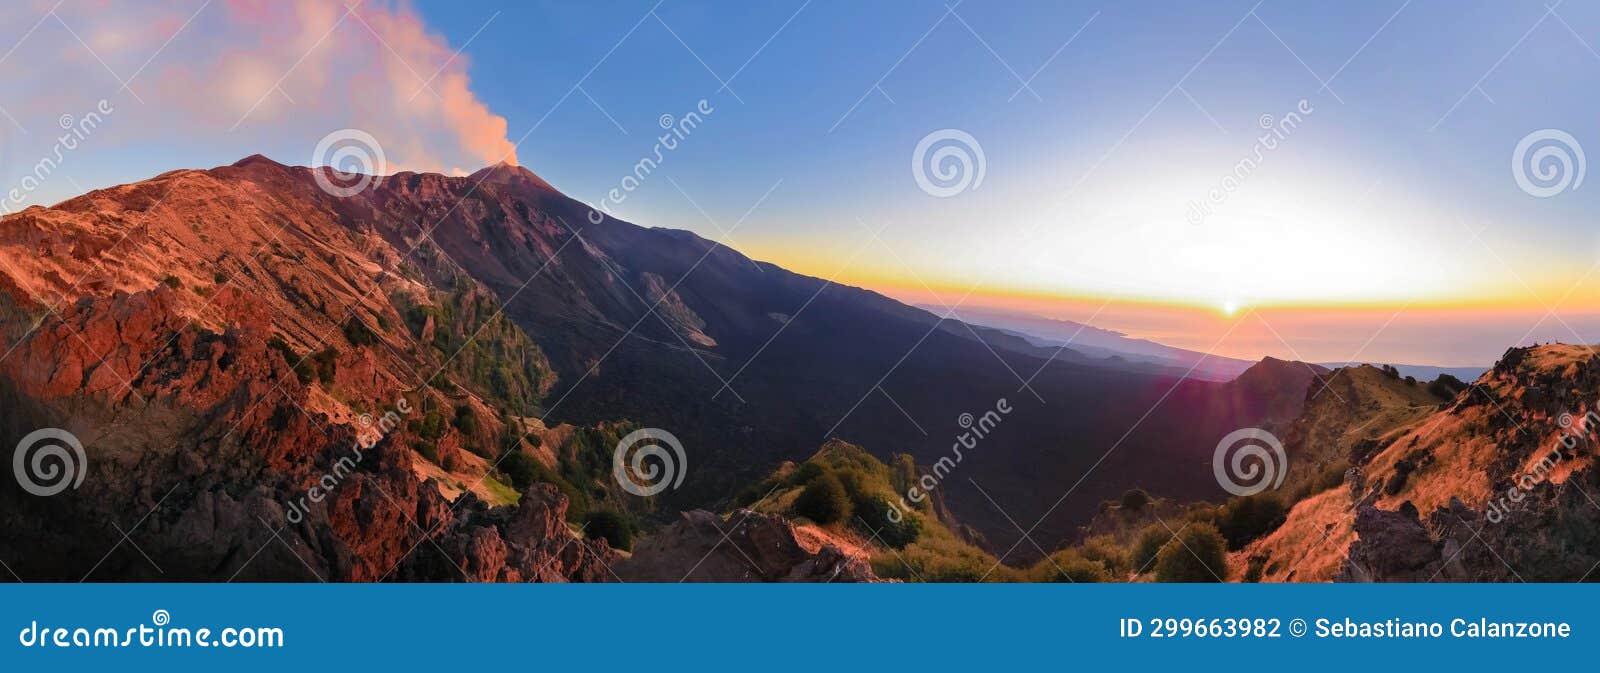 etna panoramica all'alba con vista sul cratere e valle del bove con sole che sorge e luci suggestive